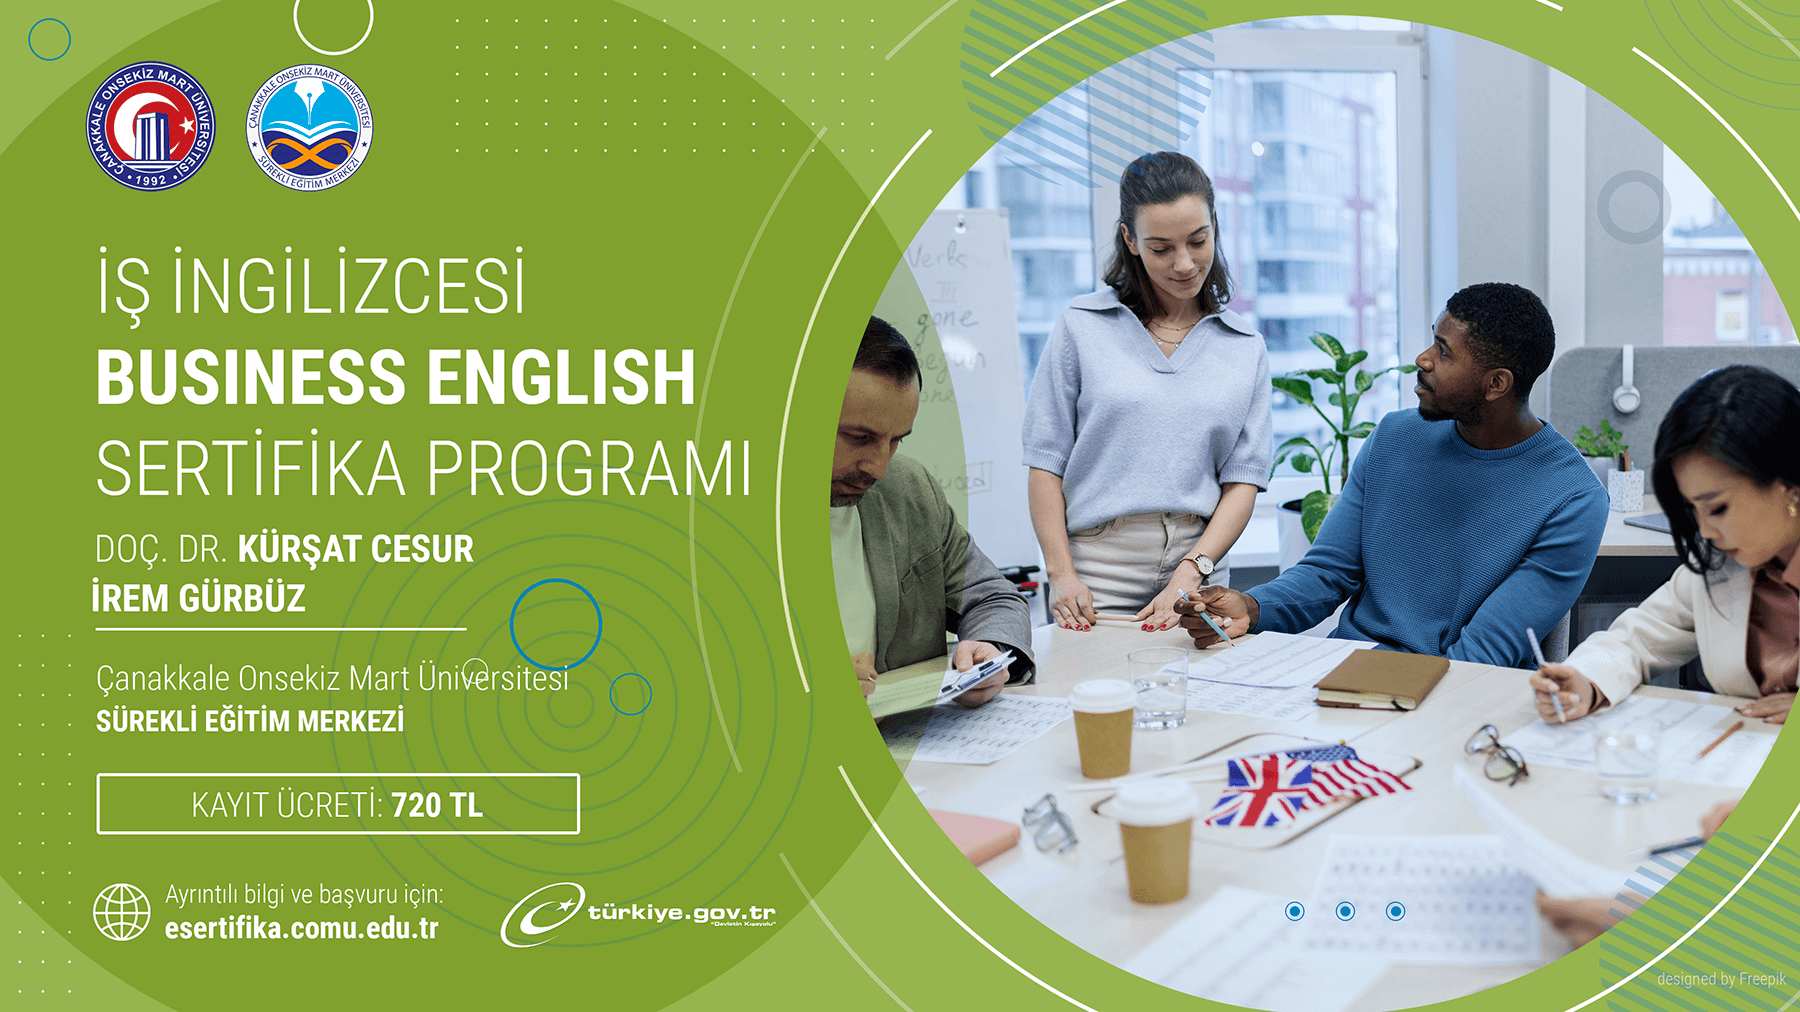 İş İngilizcesi (Business English) Eğitimi Sertifika Programı